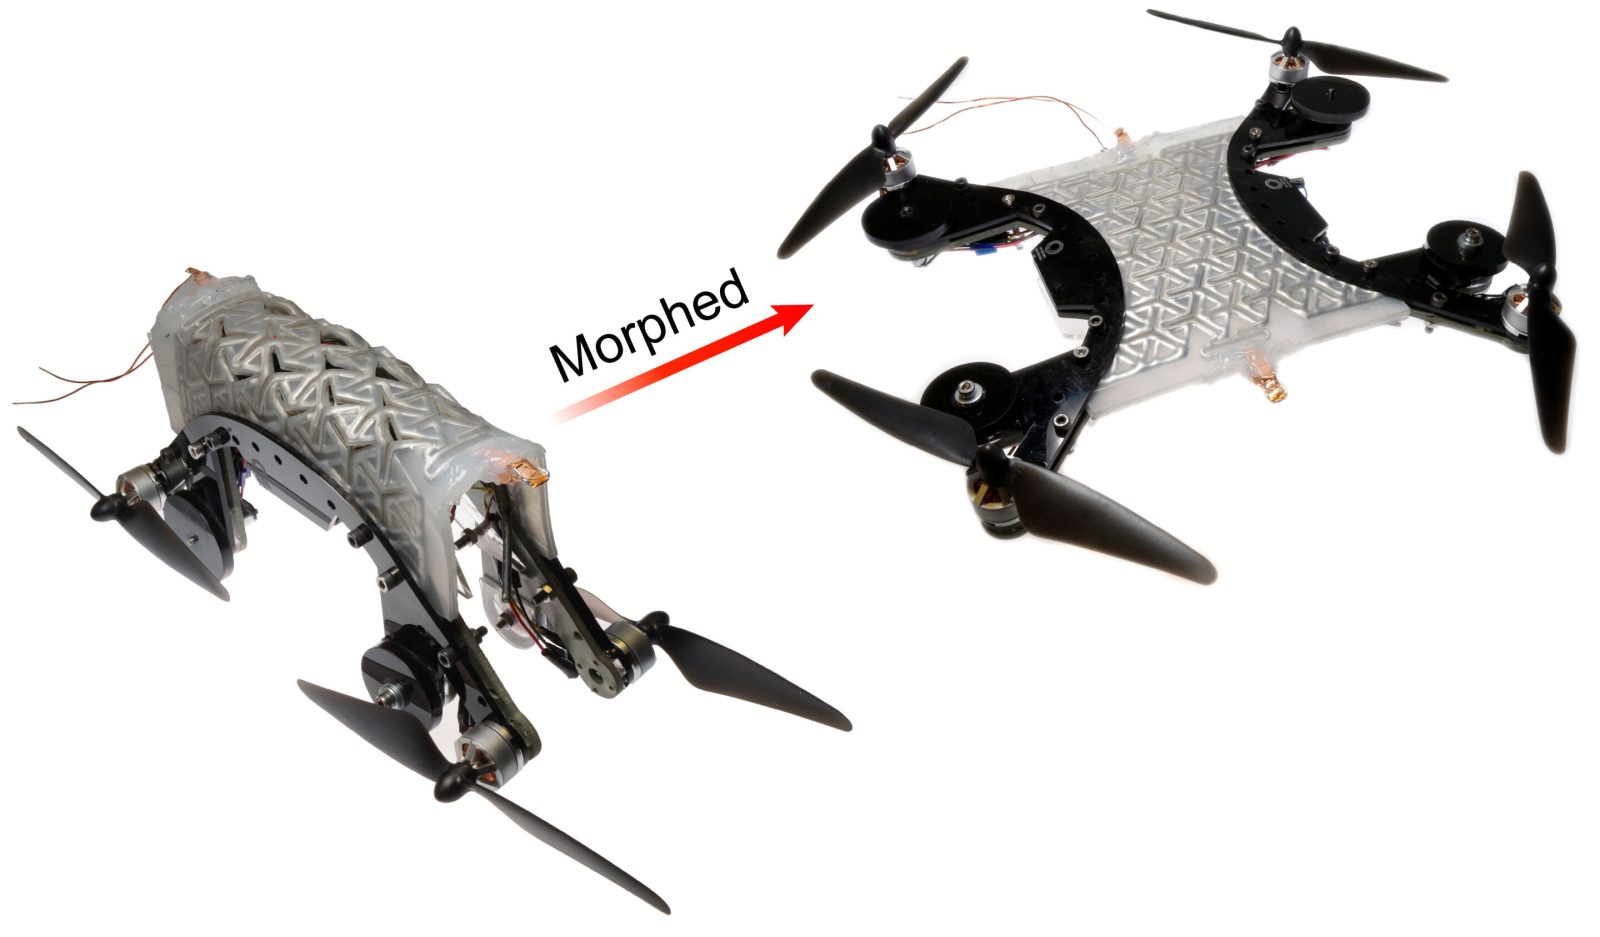 Virginia Tech drone morphing